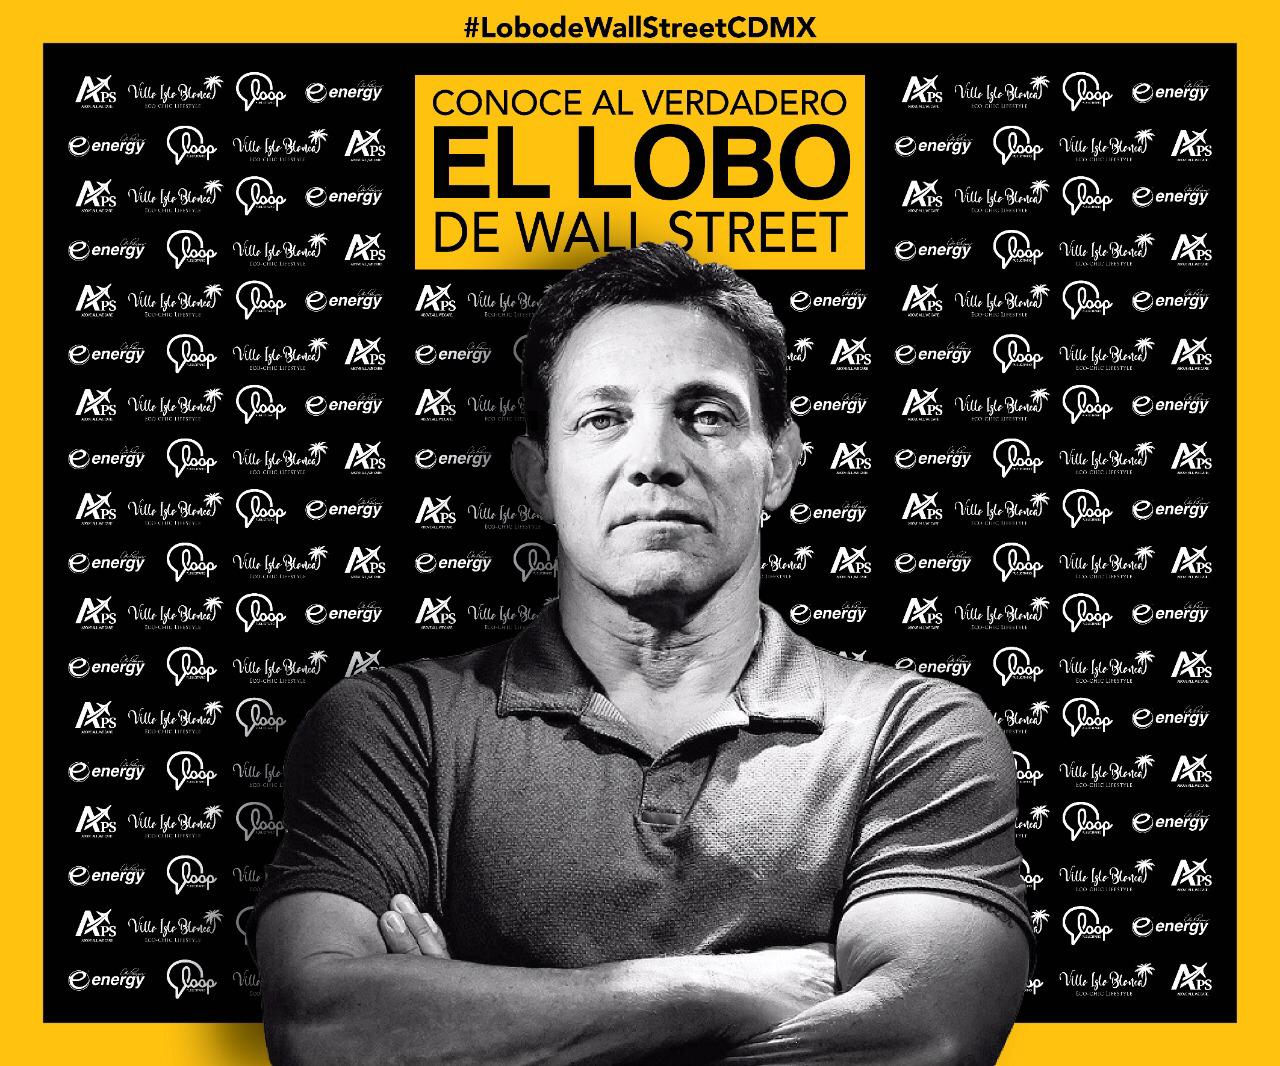  “El Lobo de Wall Street” regresa a la CDMX para dar pláticas